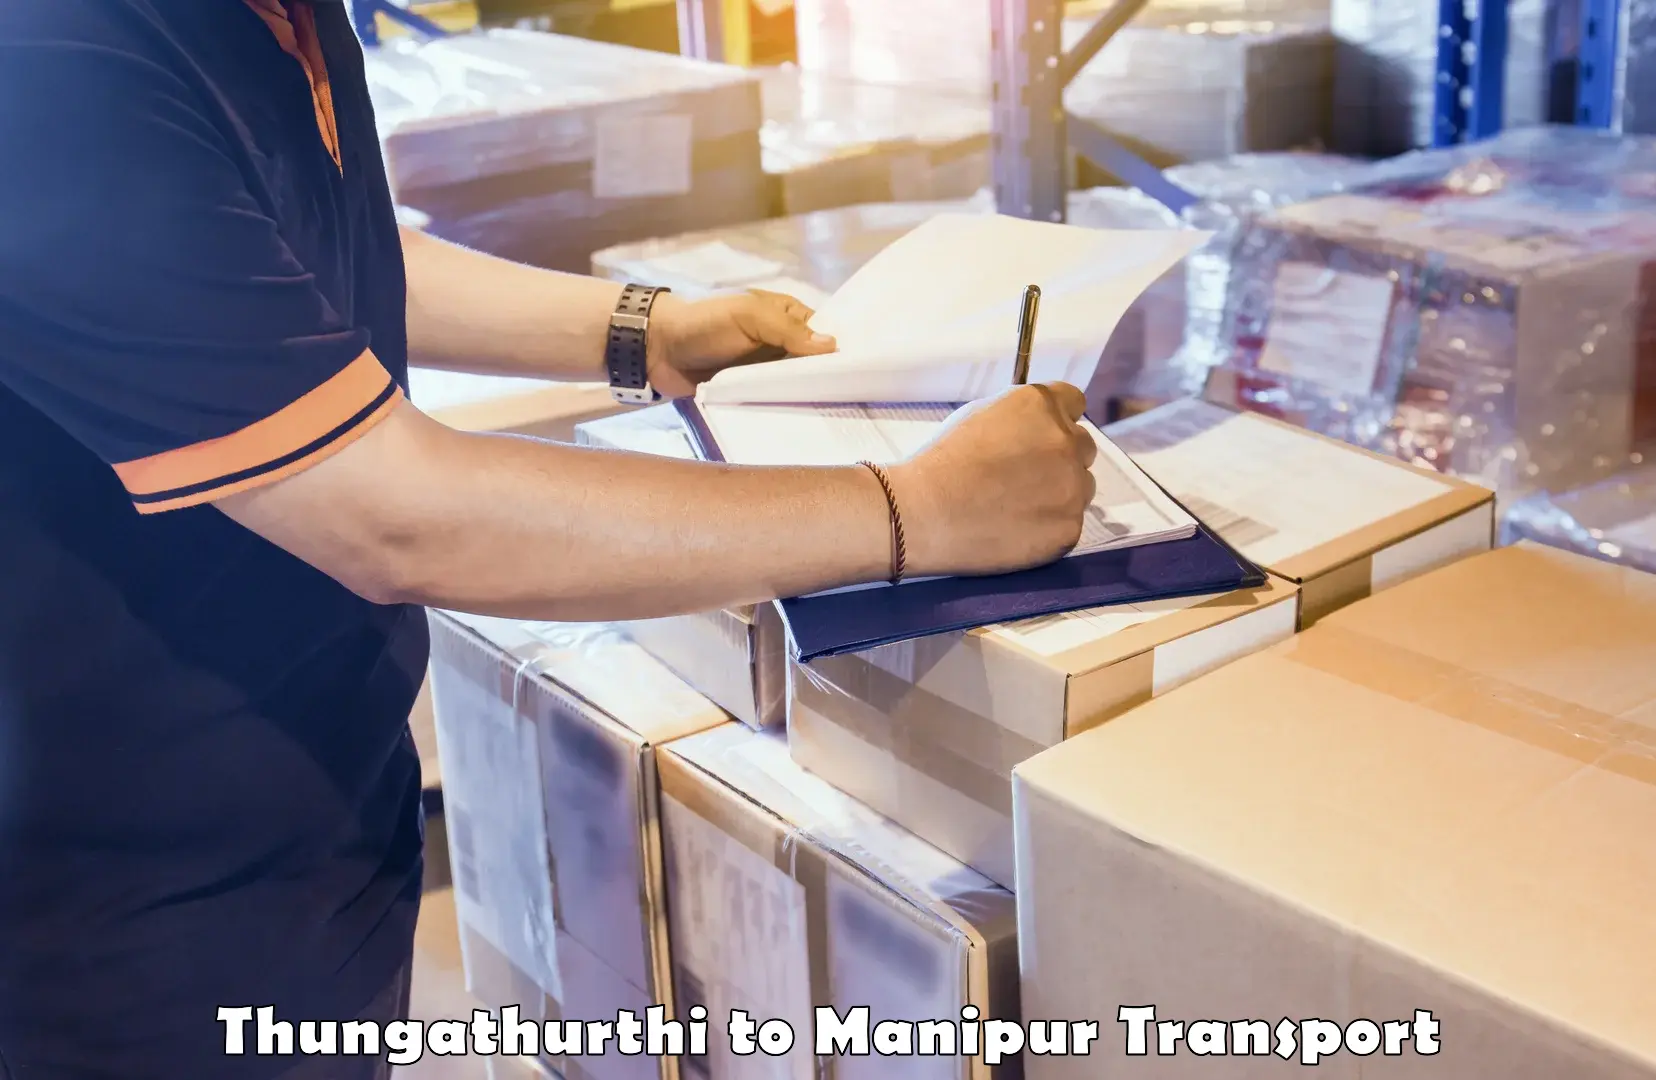 Daily parcel service transport Thungathurthi to Ukhrul